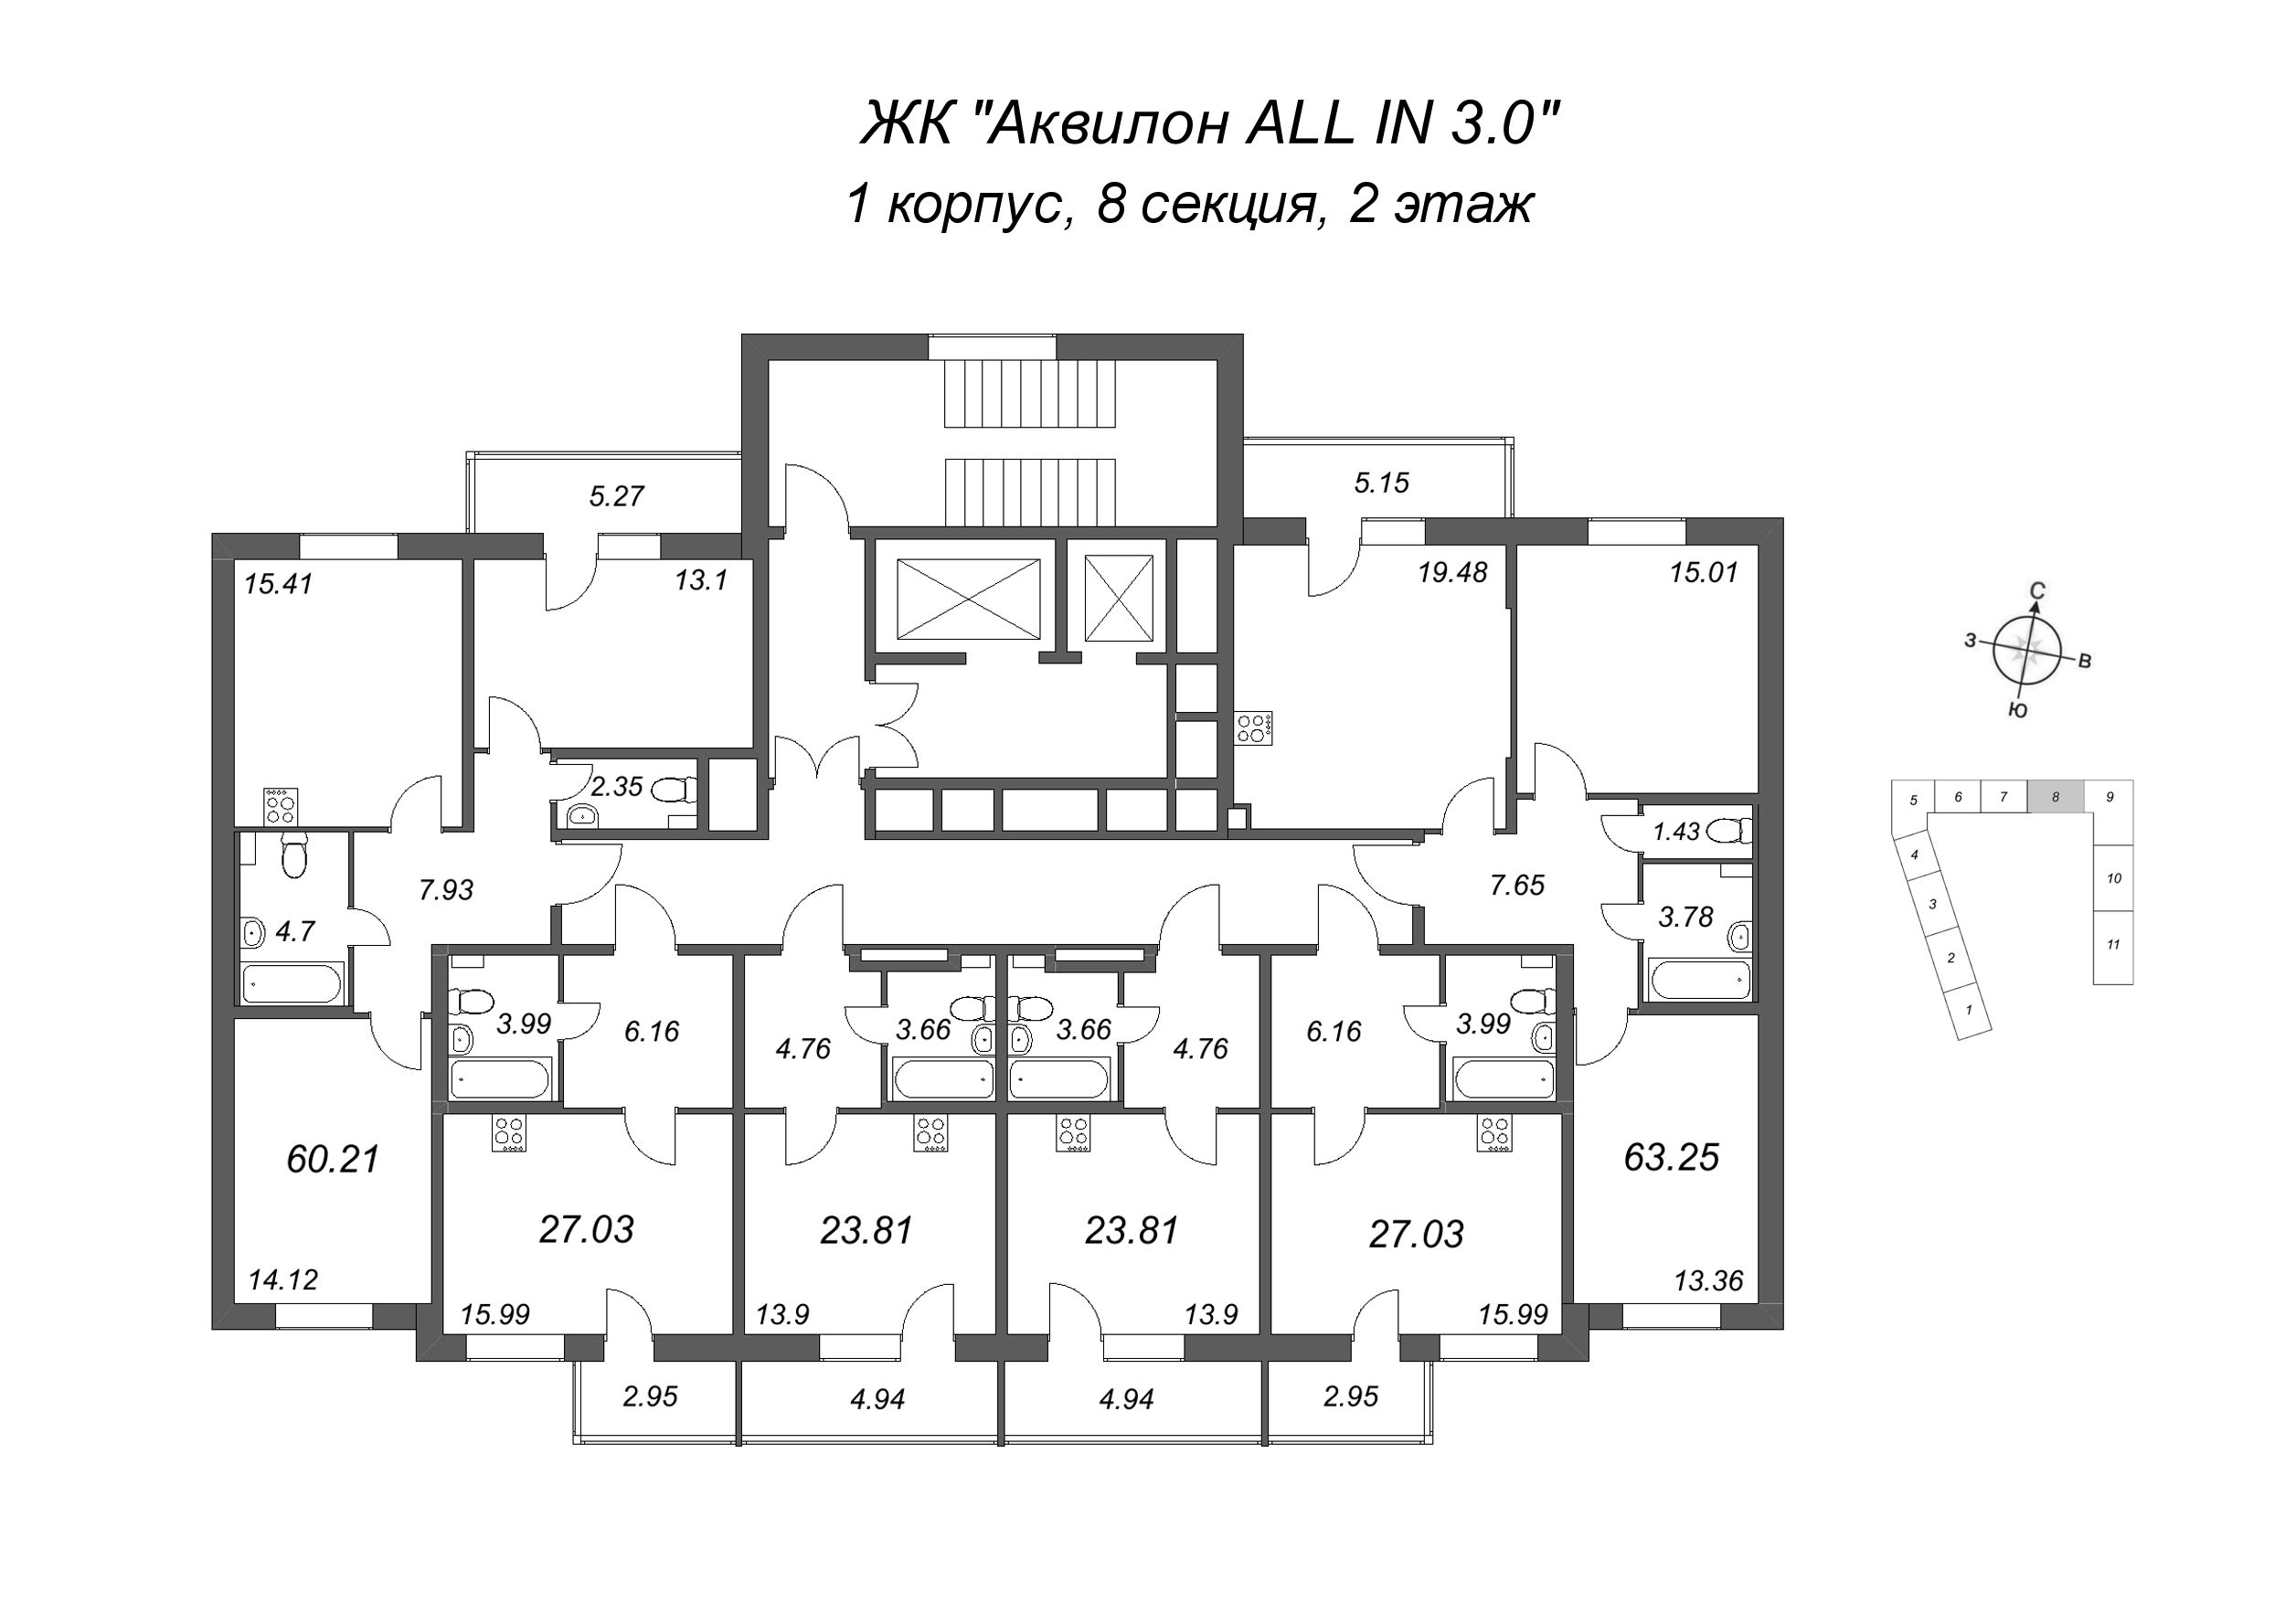 Квартира-студия, 23.81 м² в ЖК "Аквилон All in 3.0" - планировка этажа